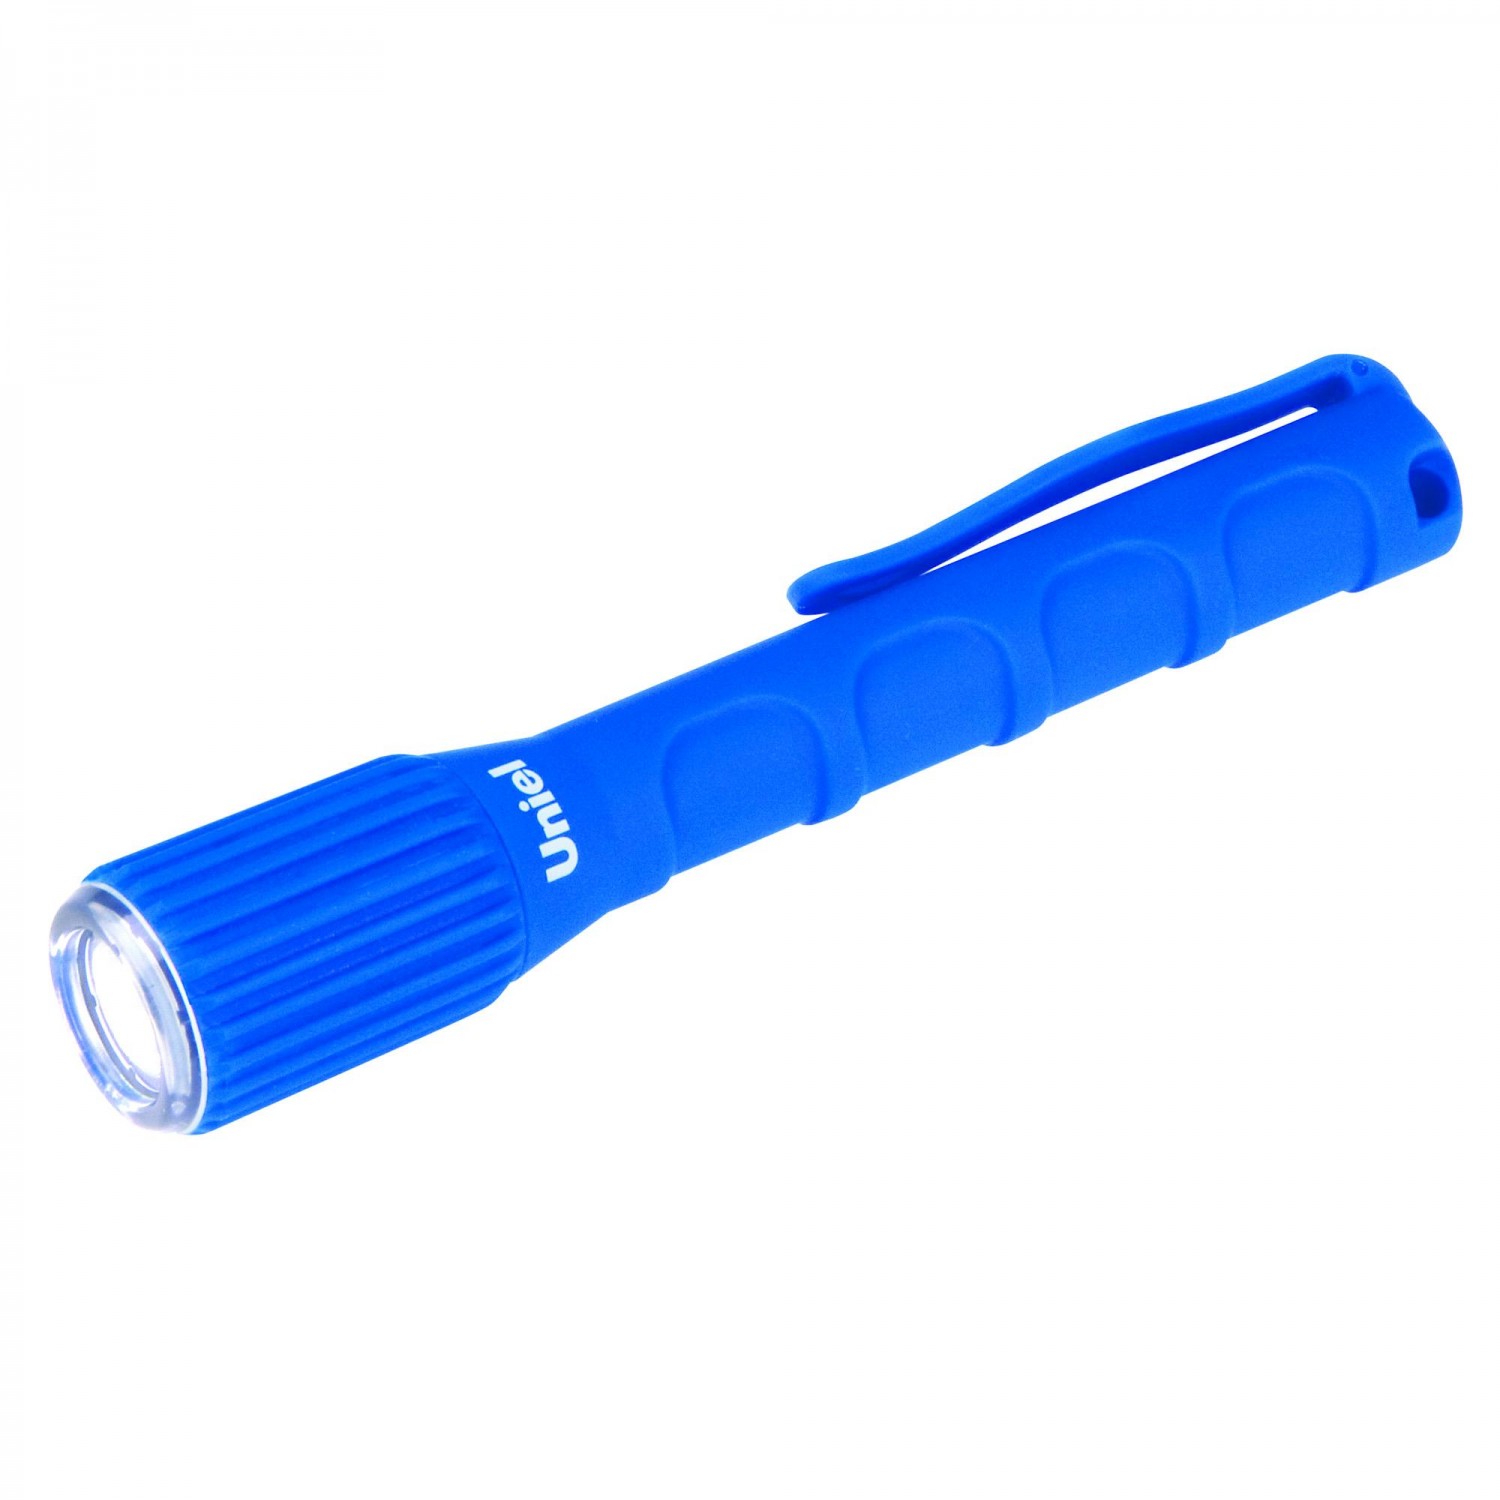 Фонарь светодиодный LED S-WP010-C прорезиненный корпус. IP67 (влагозащитный) 0.5Вт 2хААА цвет синий Uniel 